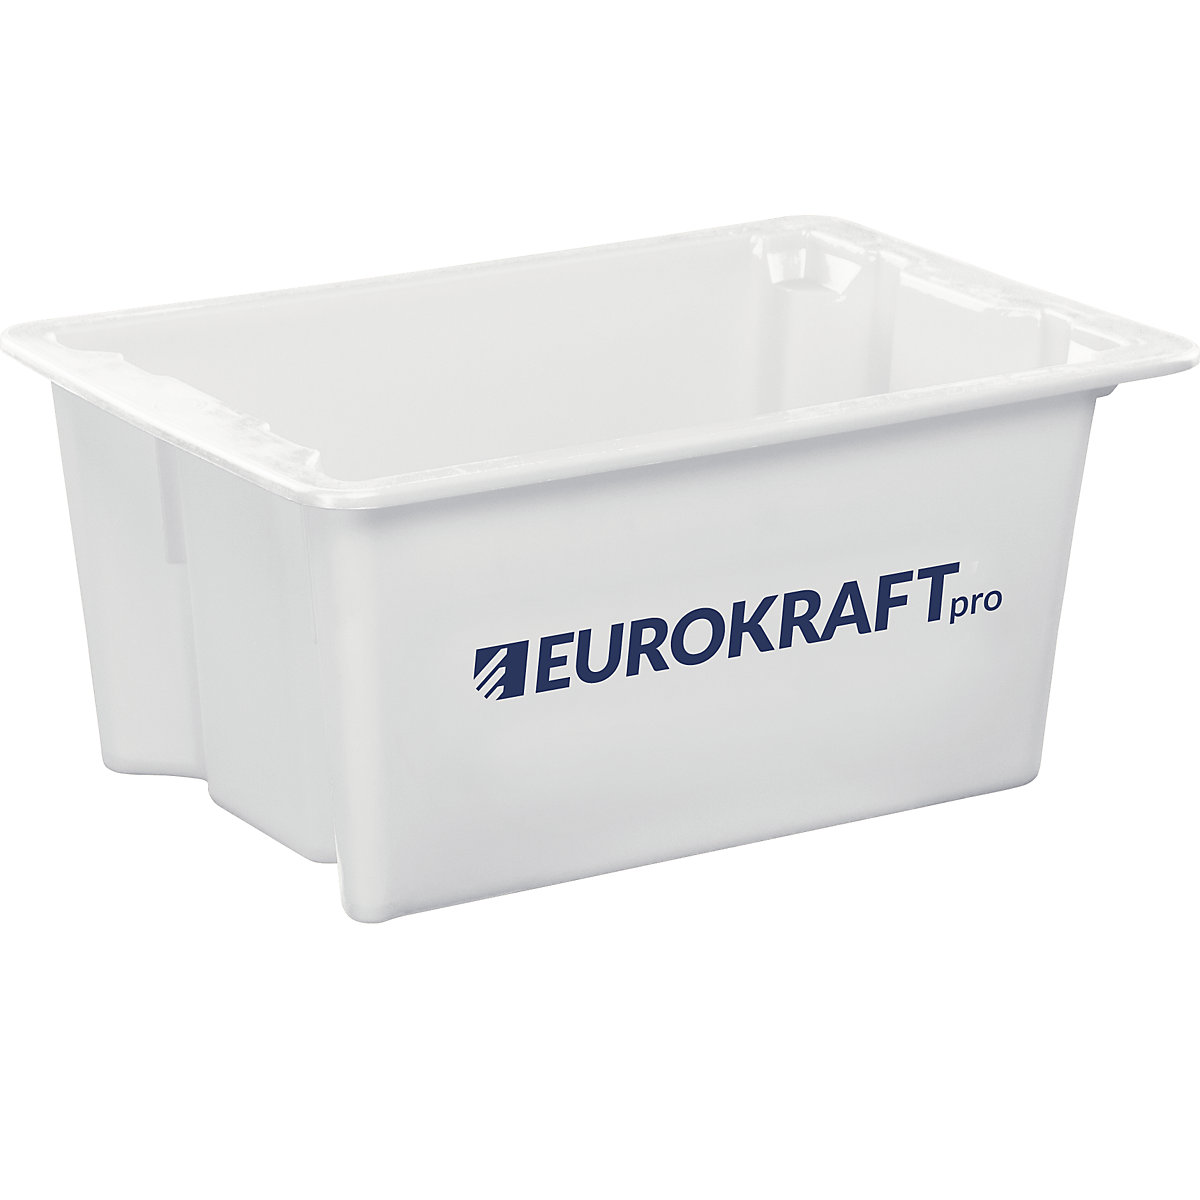 EUROKRAFTpro Drehstapelbehälter aus lebensmittelechtem Polypropylen, Inhalt 6 Liter, VE 4 Stk, Wände und Boden geschlossen, natur